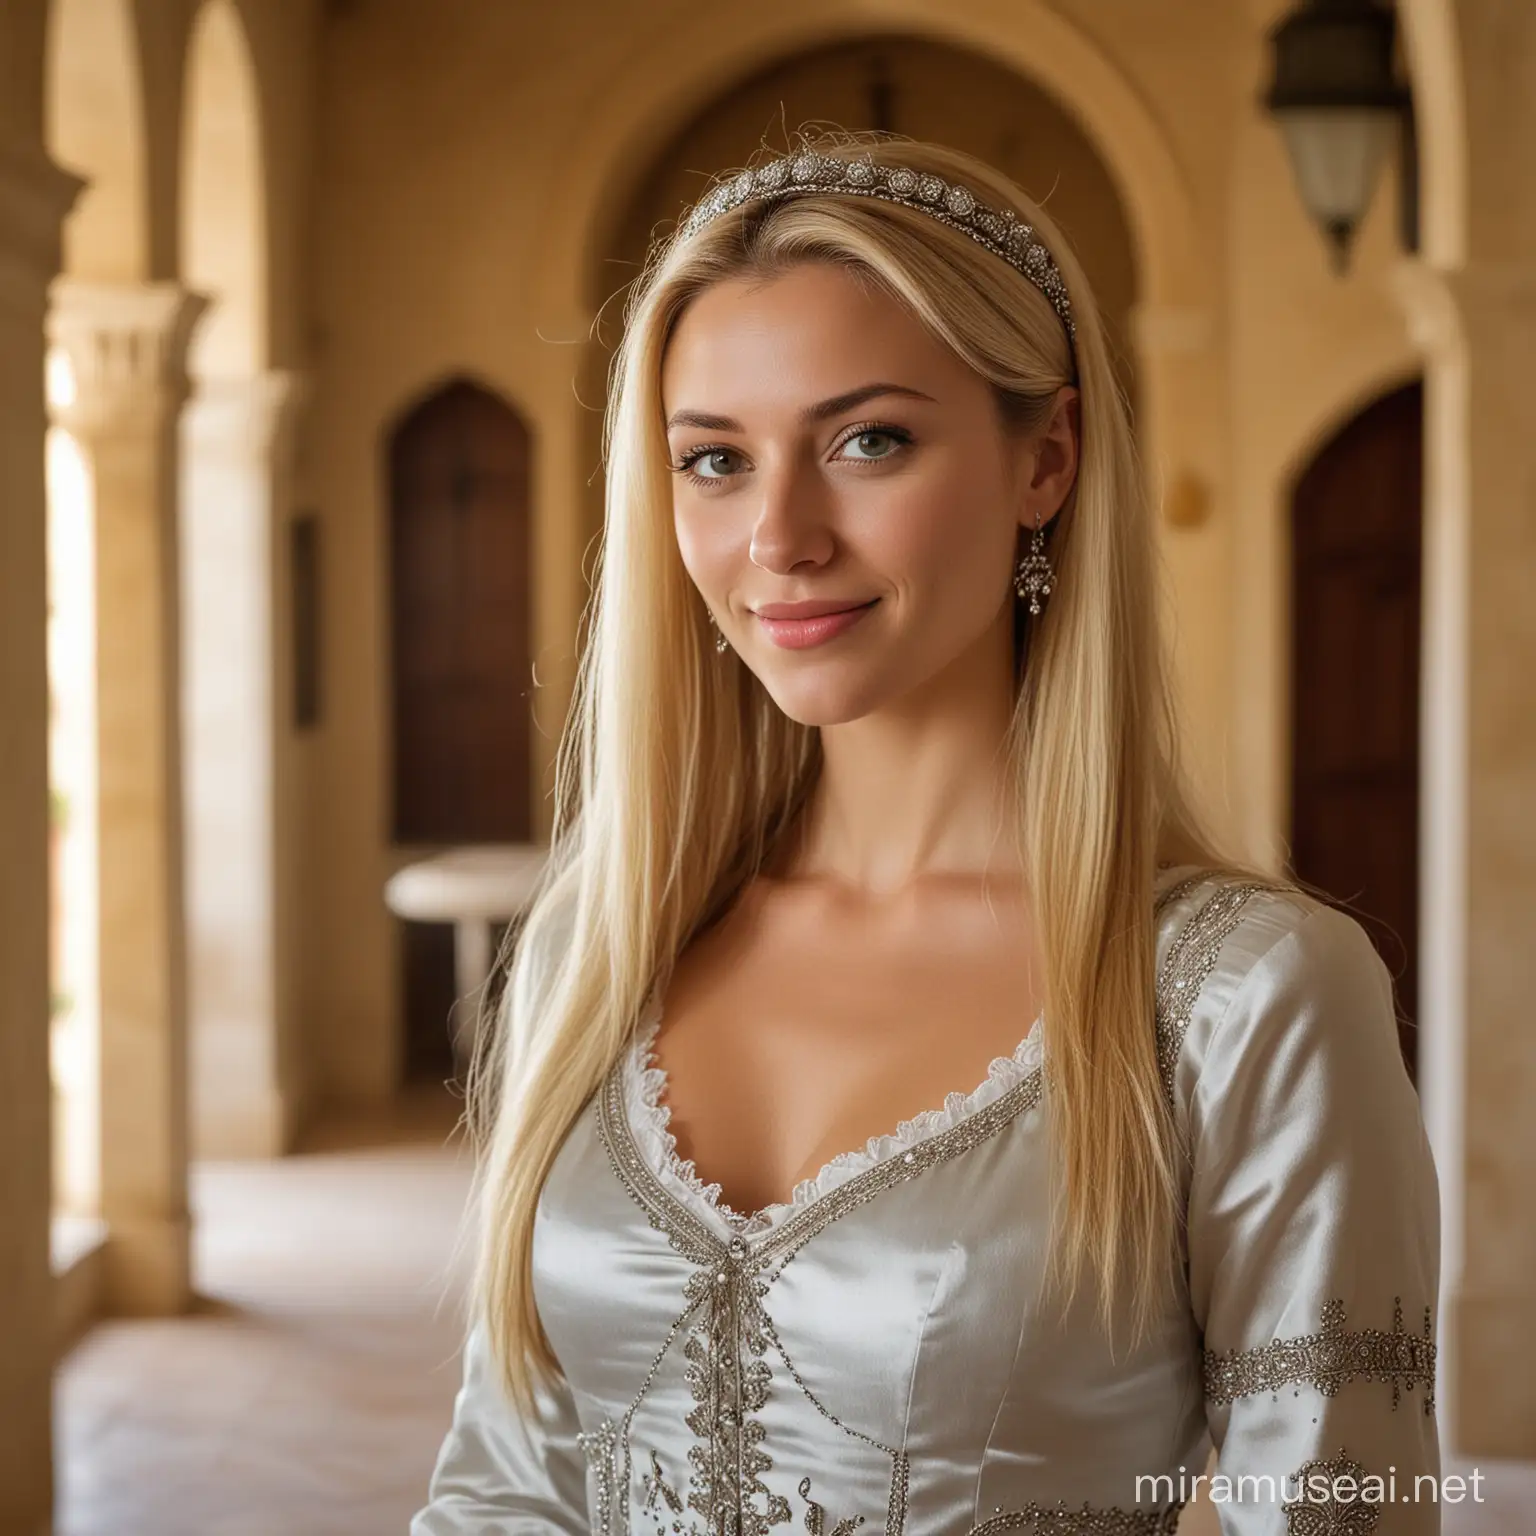 Classy Central European Woman in MedievalMediterranean Villa Entrance Hall